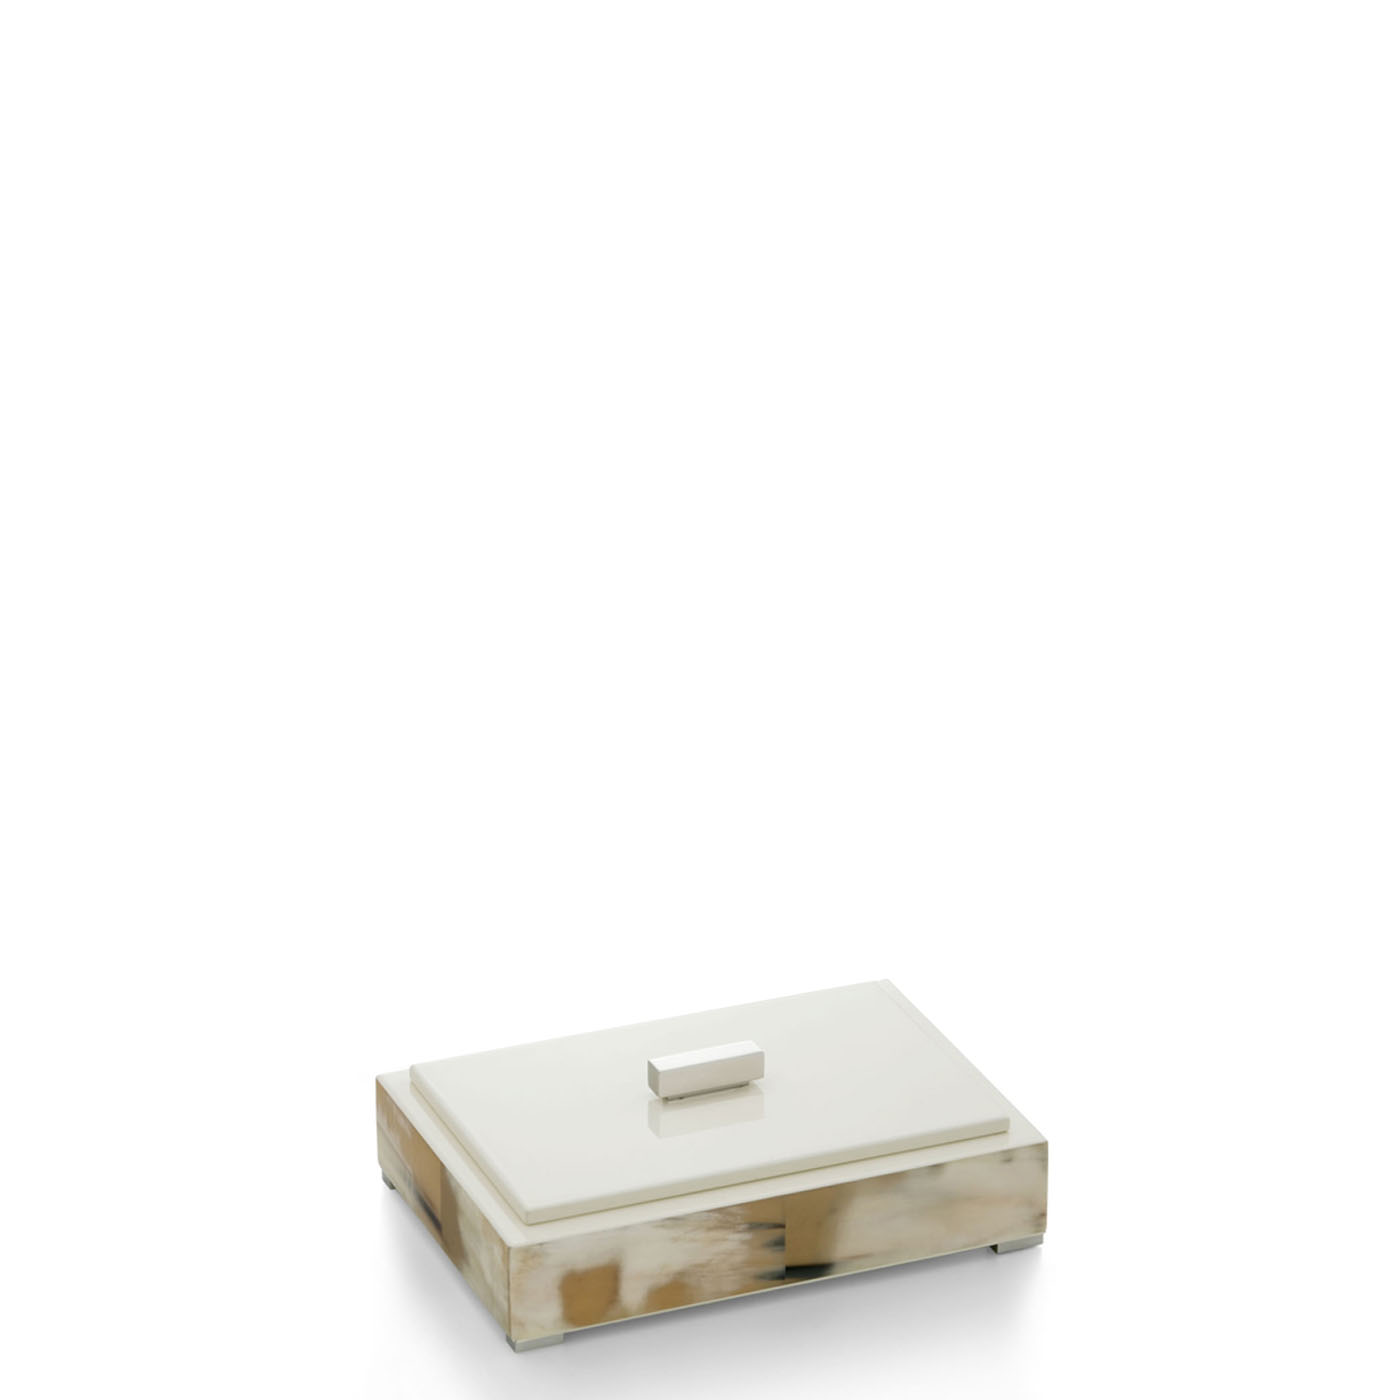 Cornici e scatole - LEA Scatole in legno laccato lucido colore avorio 1628 - Arcahorn